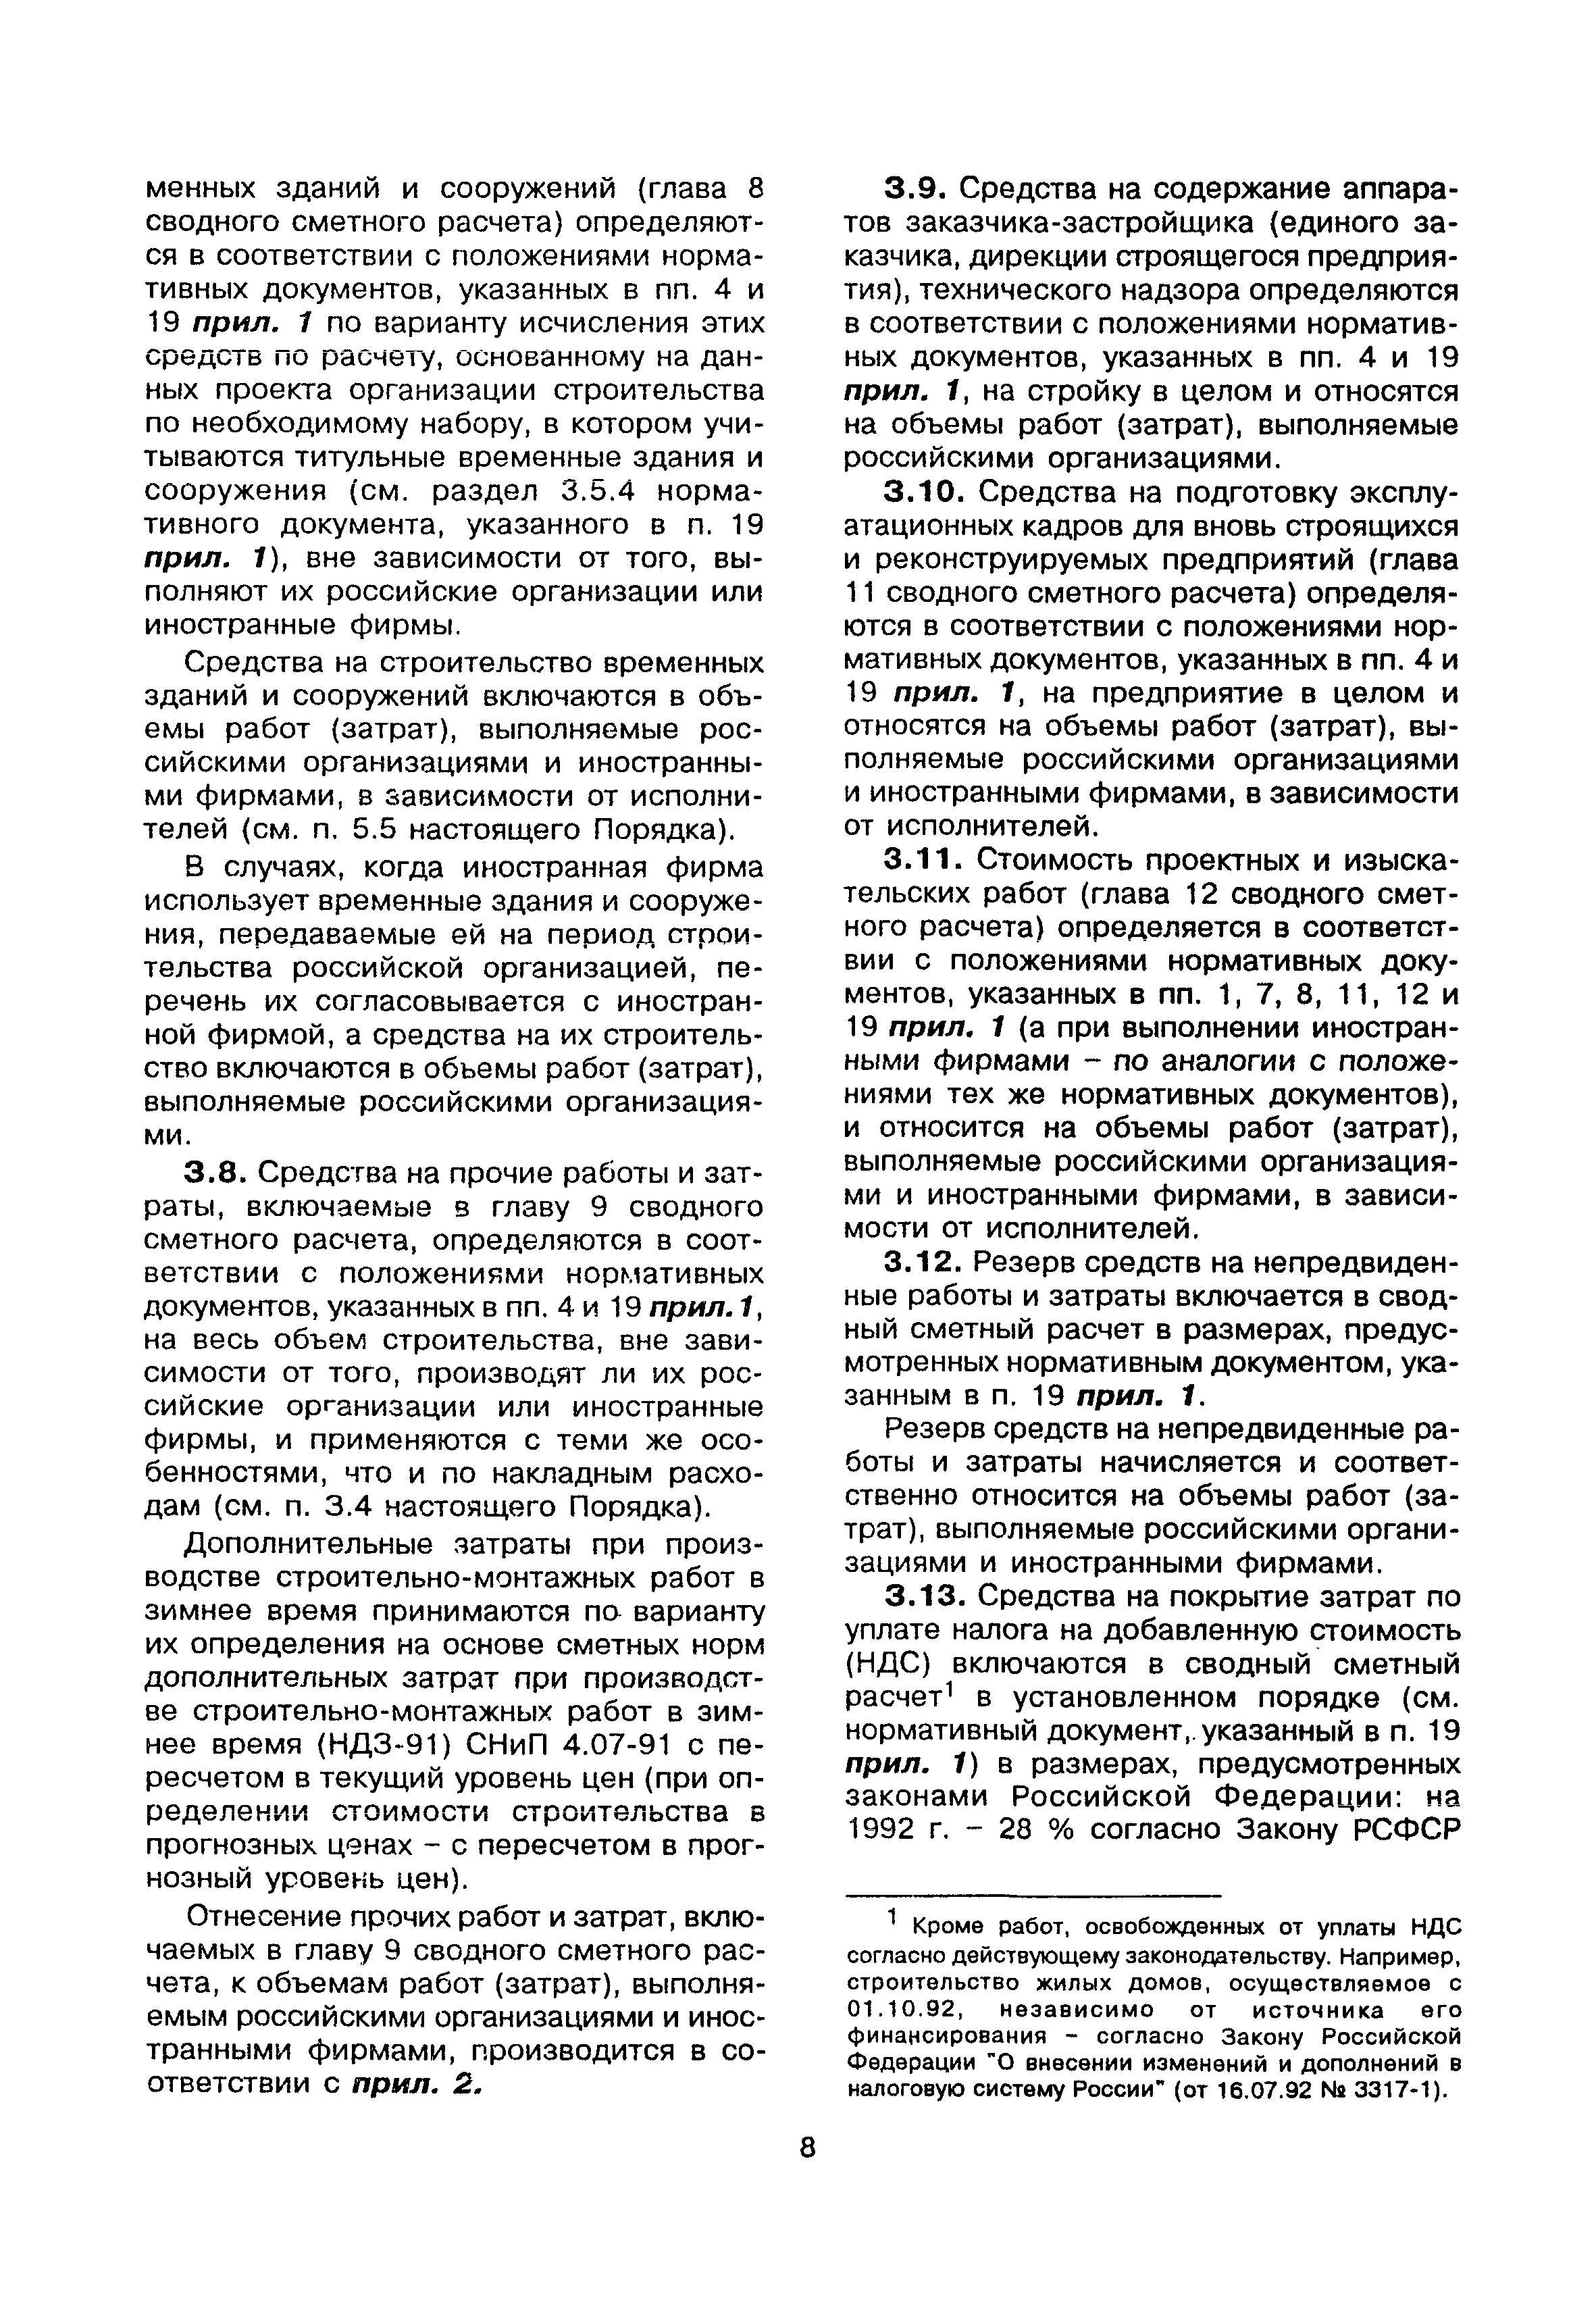 МДС 81-22.2000